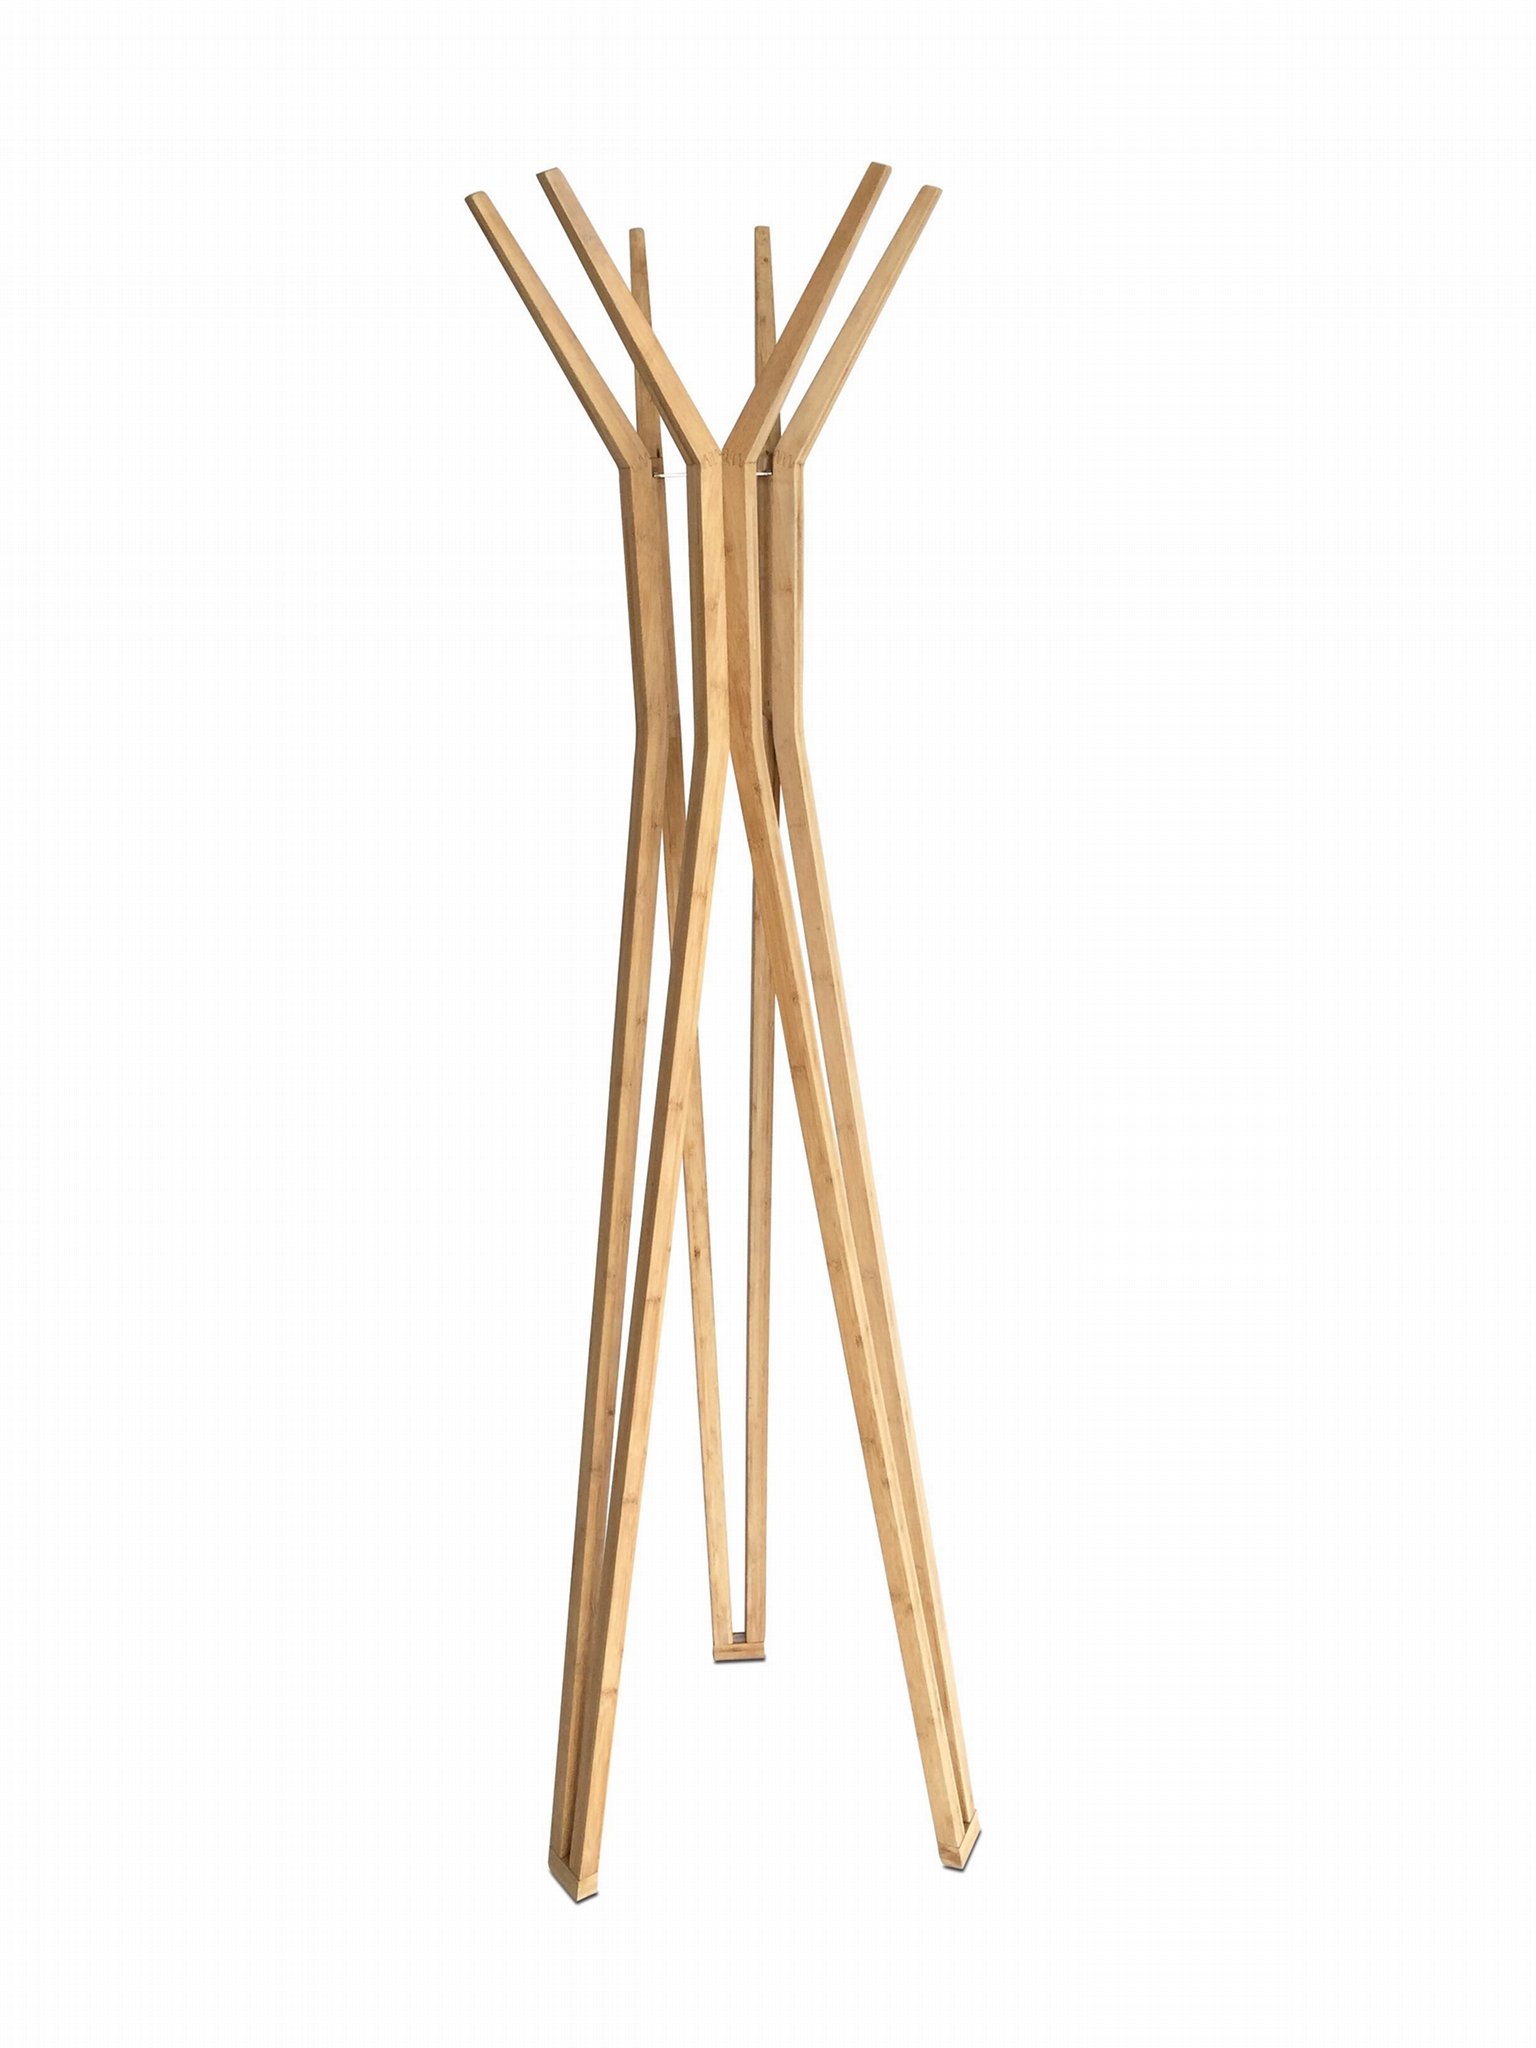 Polar Solid Bamboo Coat Rack/ Coat Hanger (5017) 2